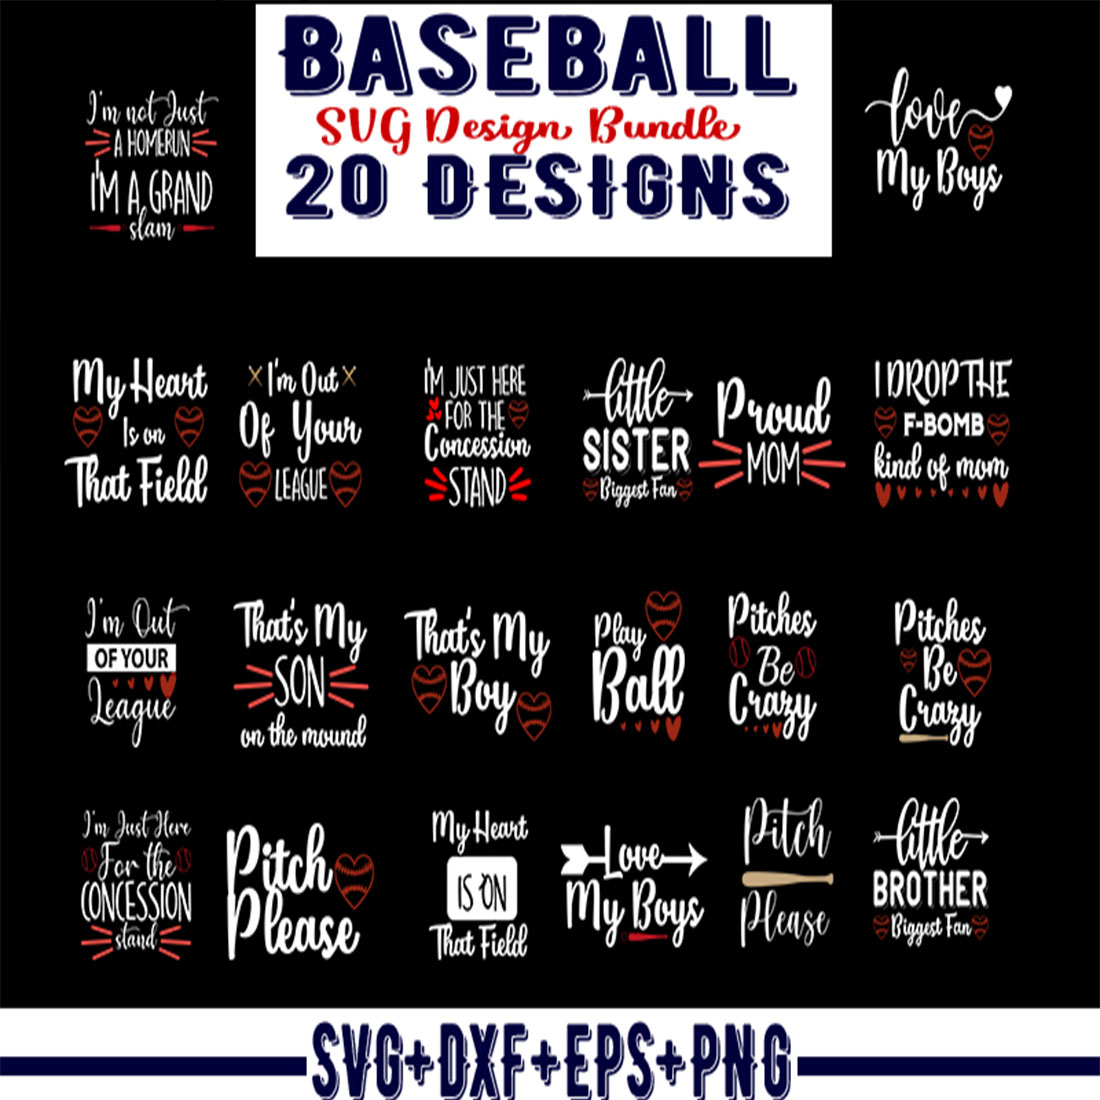 Baseball SVG Design Bundle preview image.